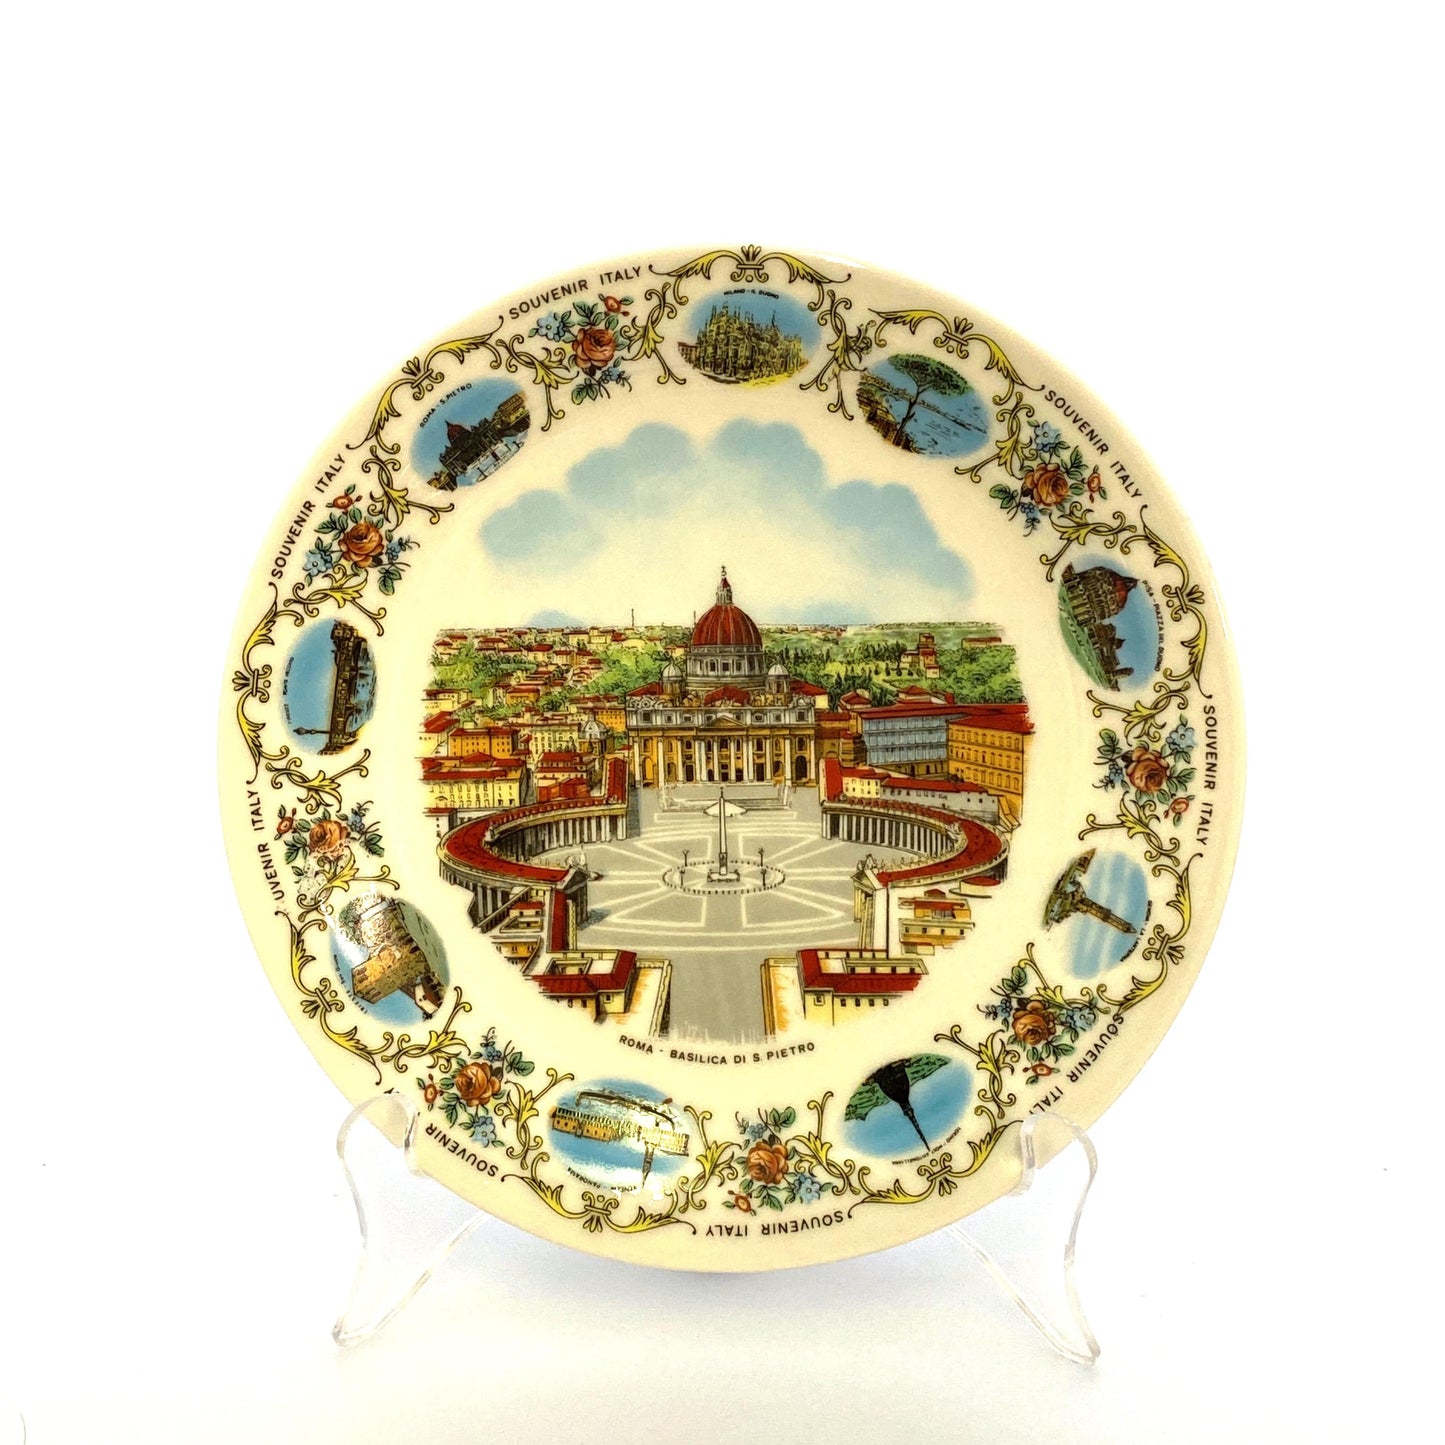 Collectors Souvenir Plate “ROMA - BASILICA DI S PIETRO” Collectible White 8”